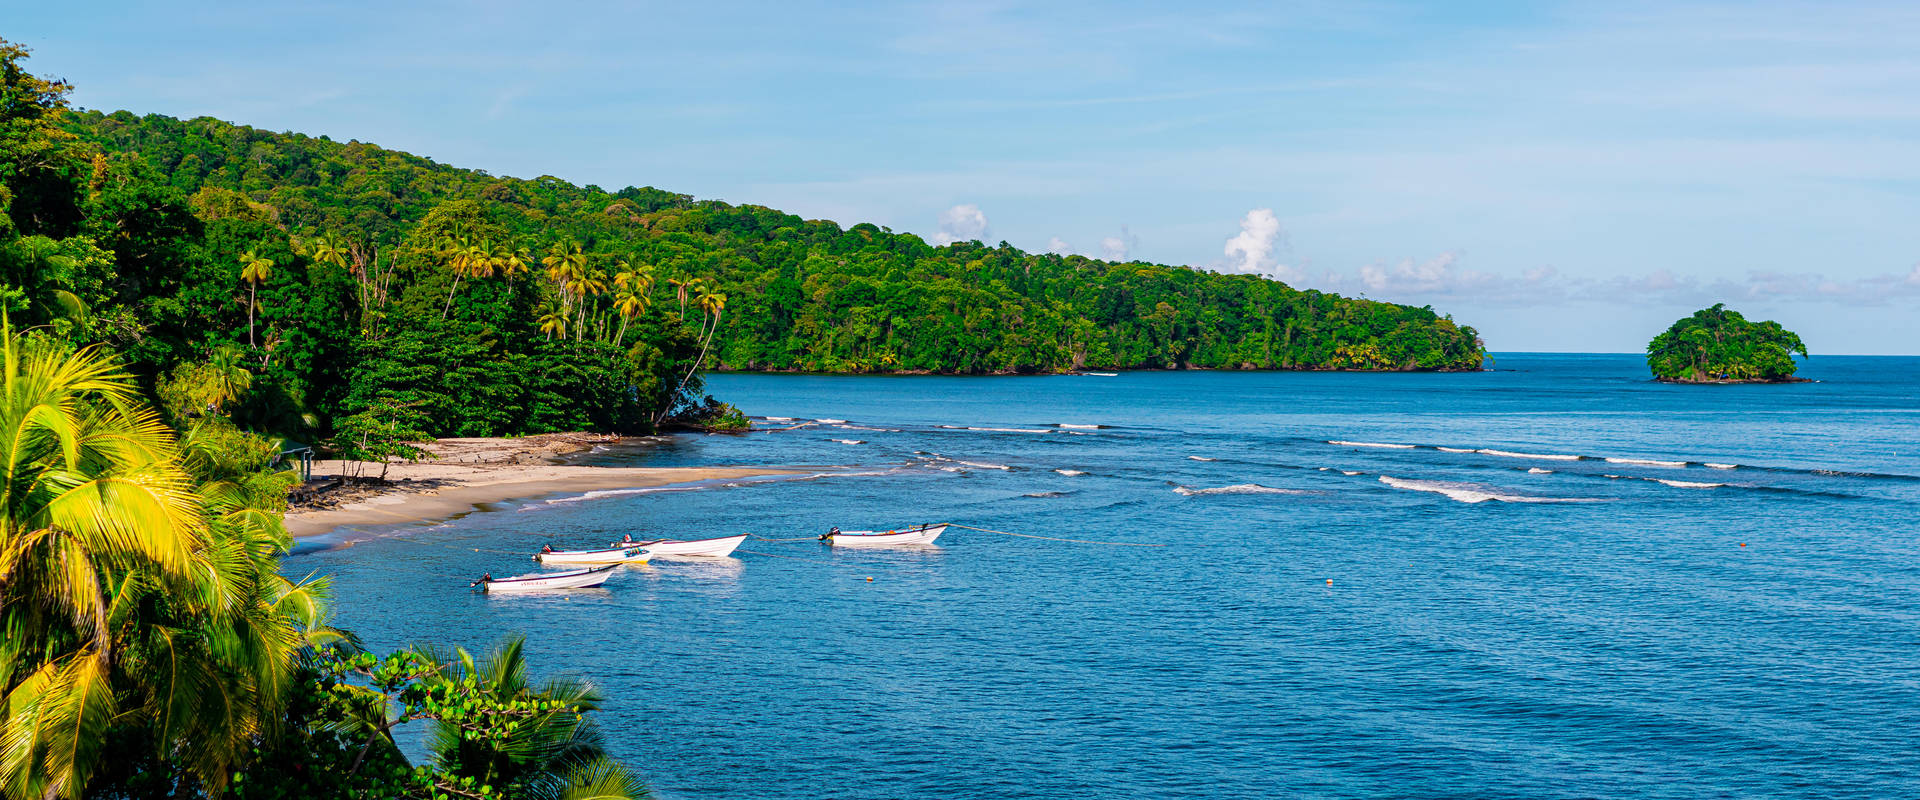 Trinidad And Tobago Salybia Bay